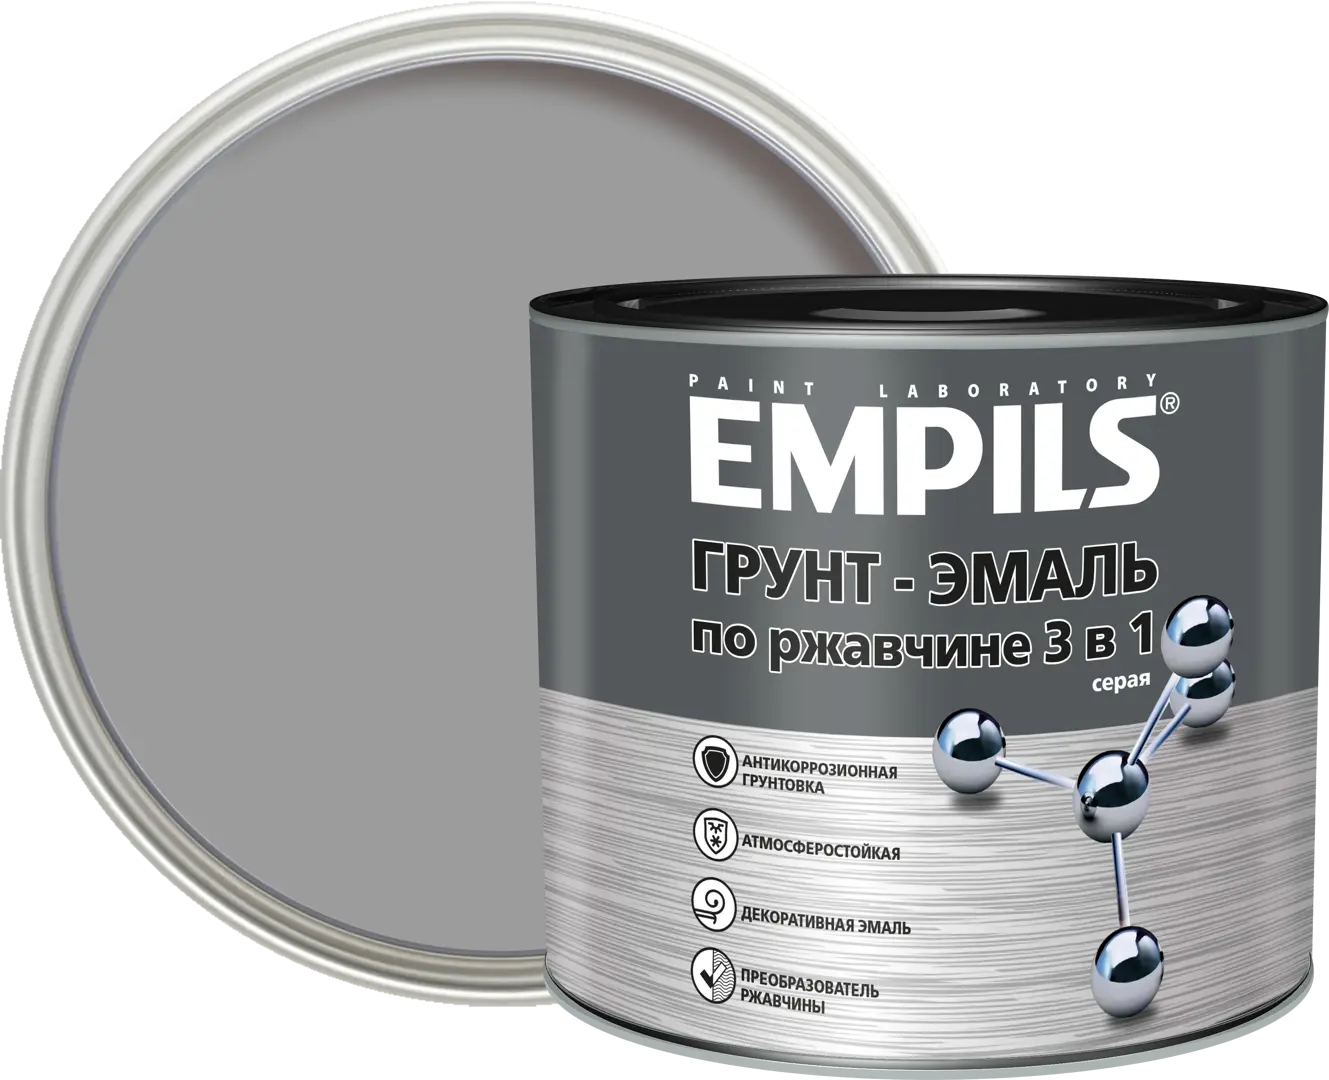 Грунт-эмаль по ржавчине 3 в 1 Empils PL цвет серый 2.7 кг